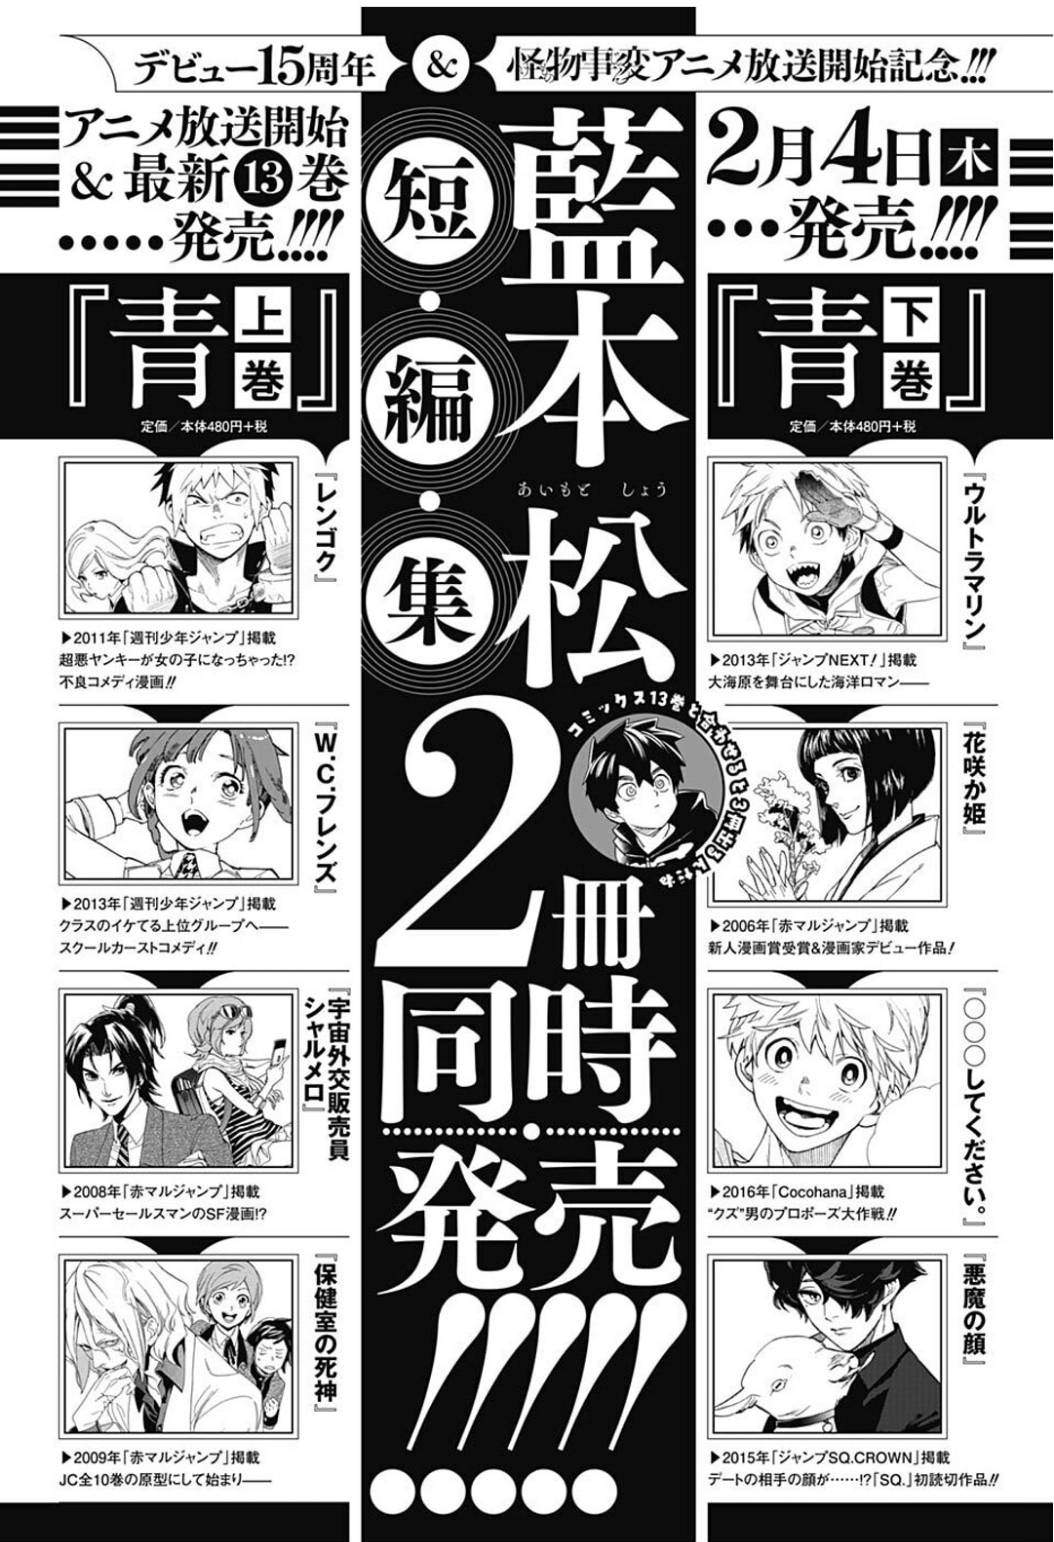 藍本松「怪物事変」第13巻 2月4日発売! 短編集も2冊同時発売!